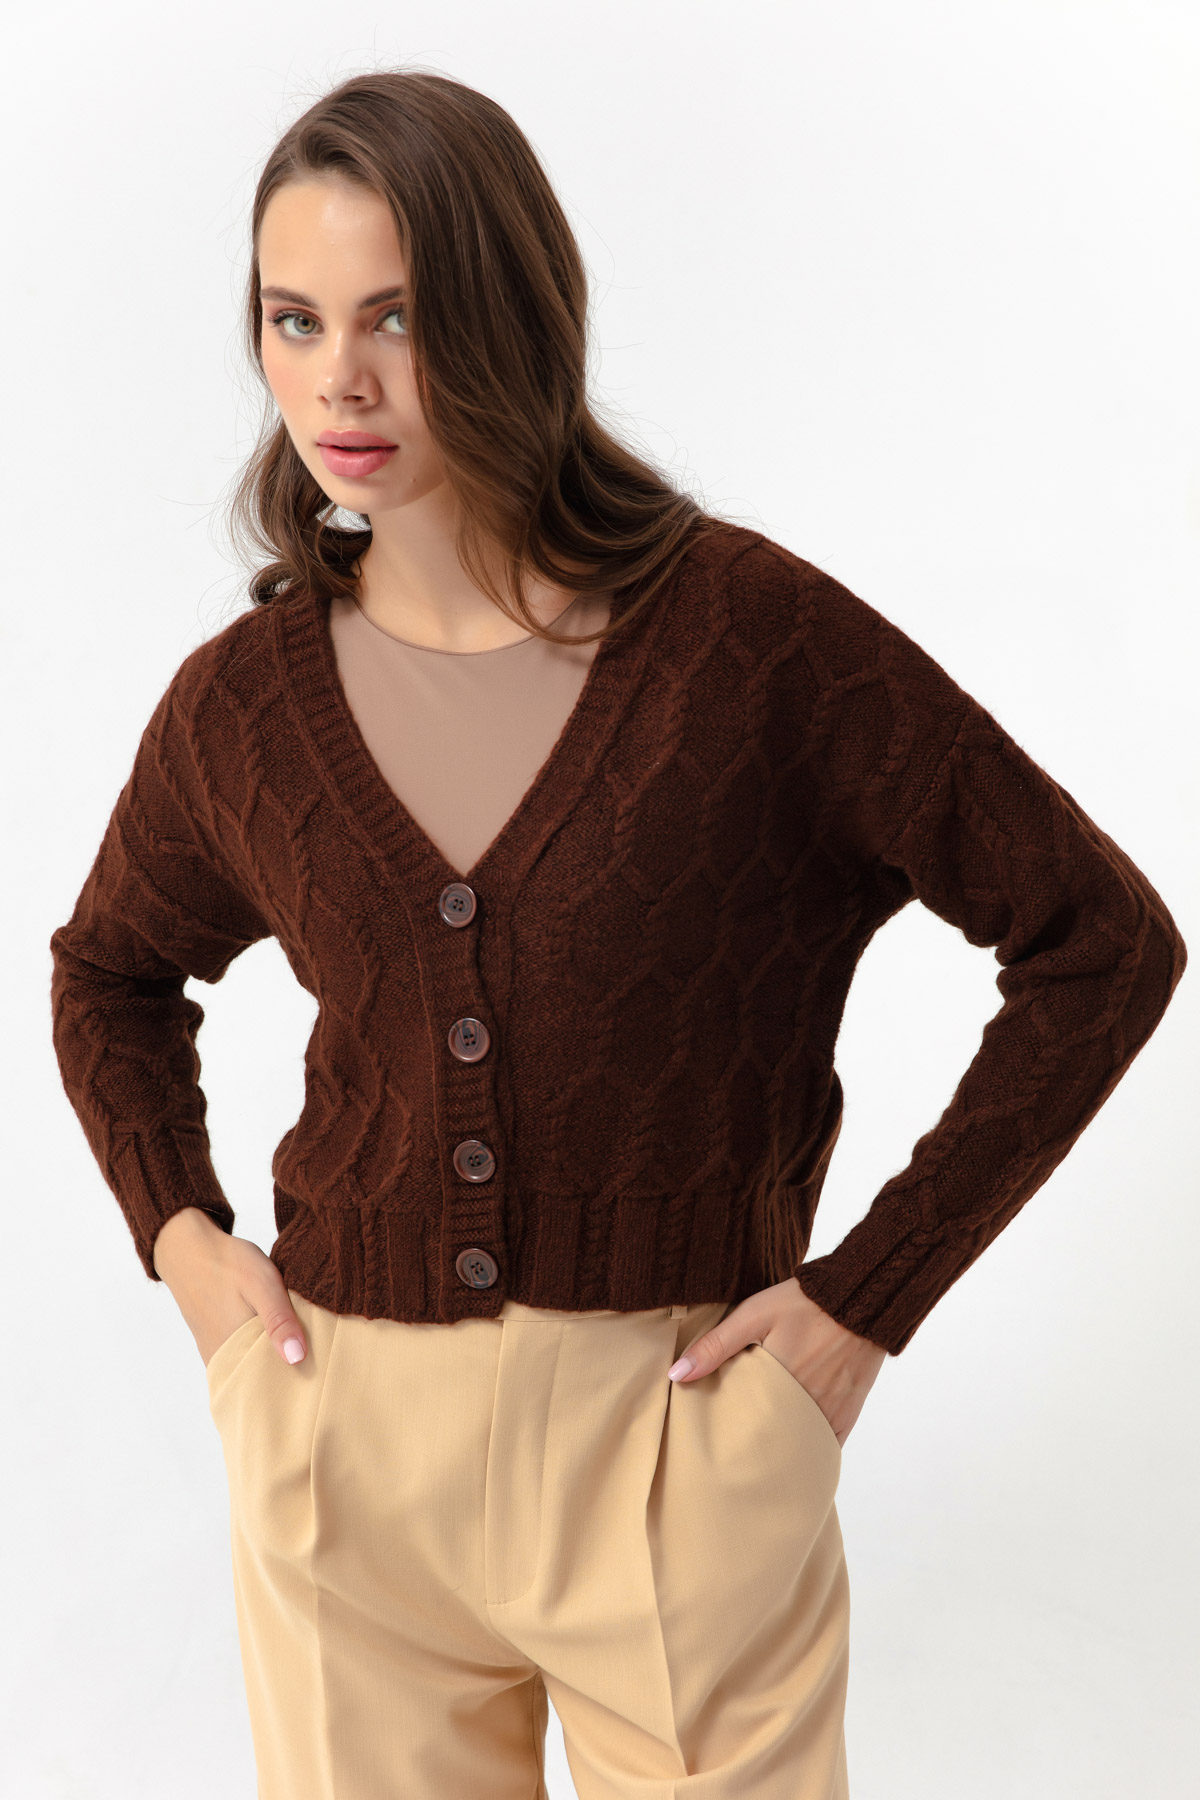 Women's Brown Buttoned Knitwear Cardigan